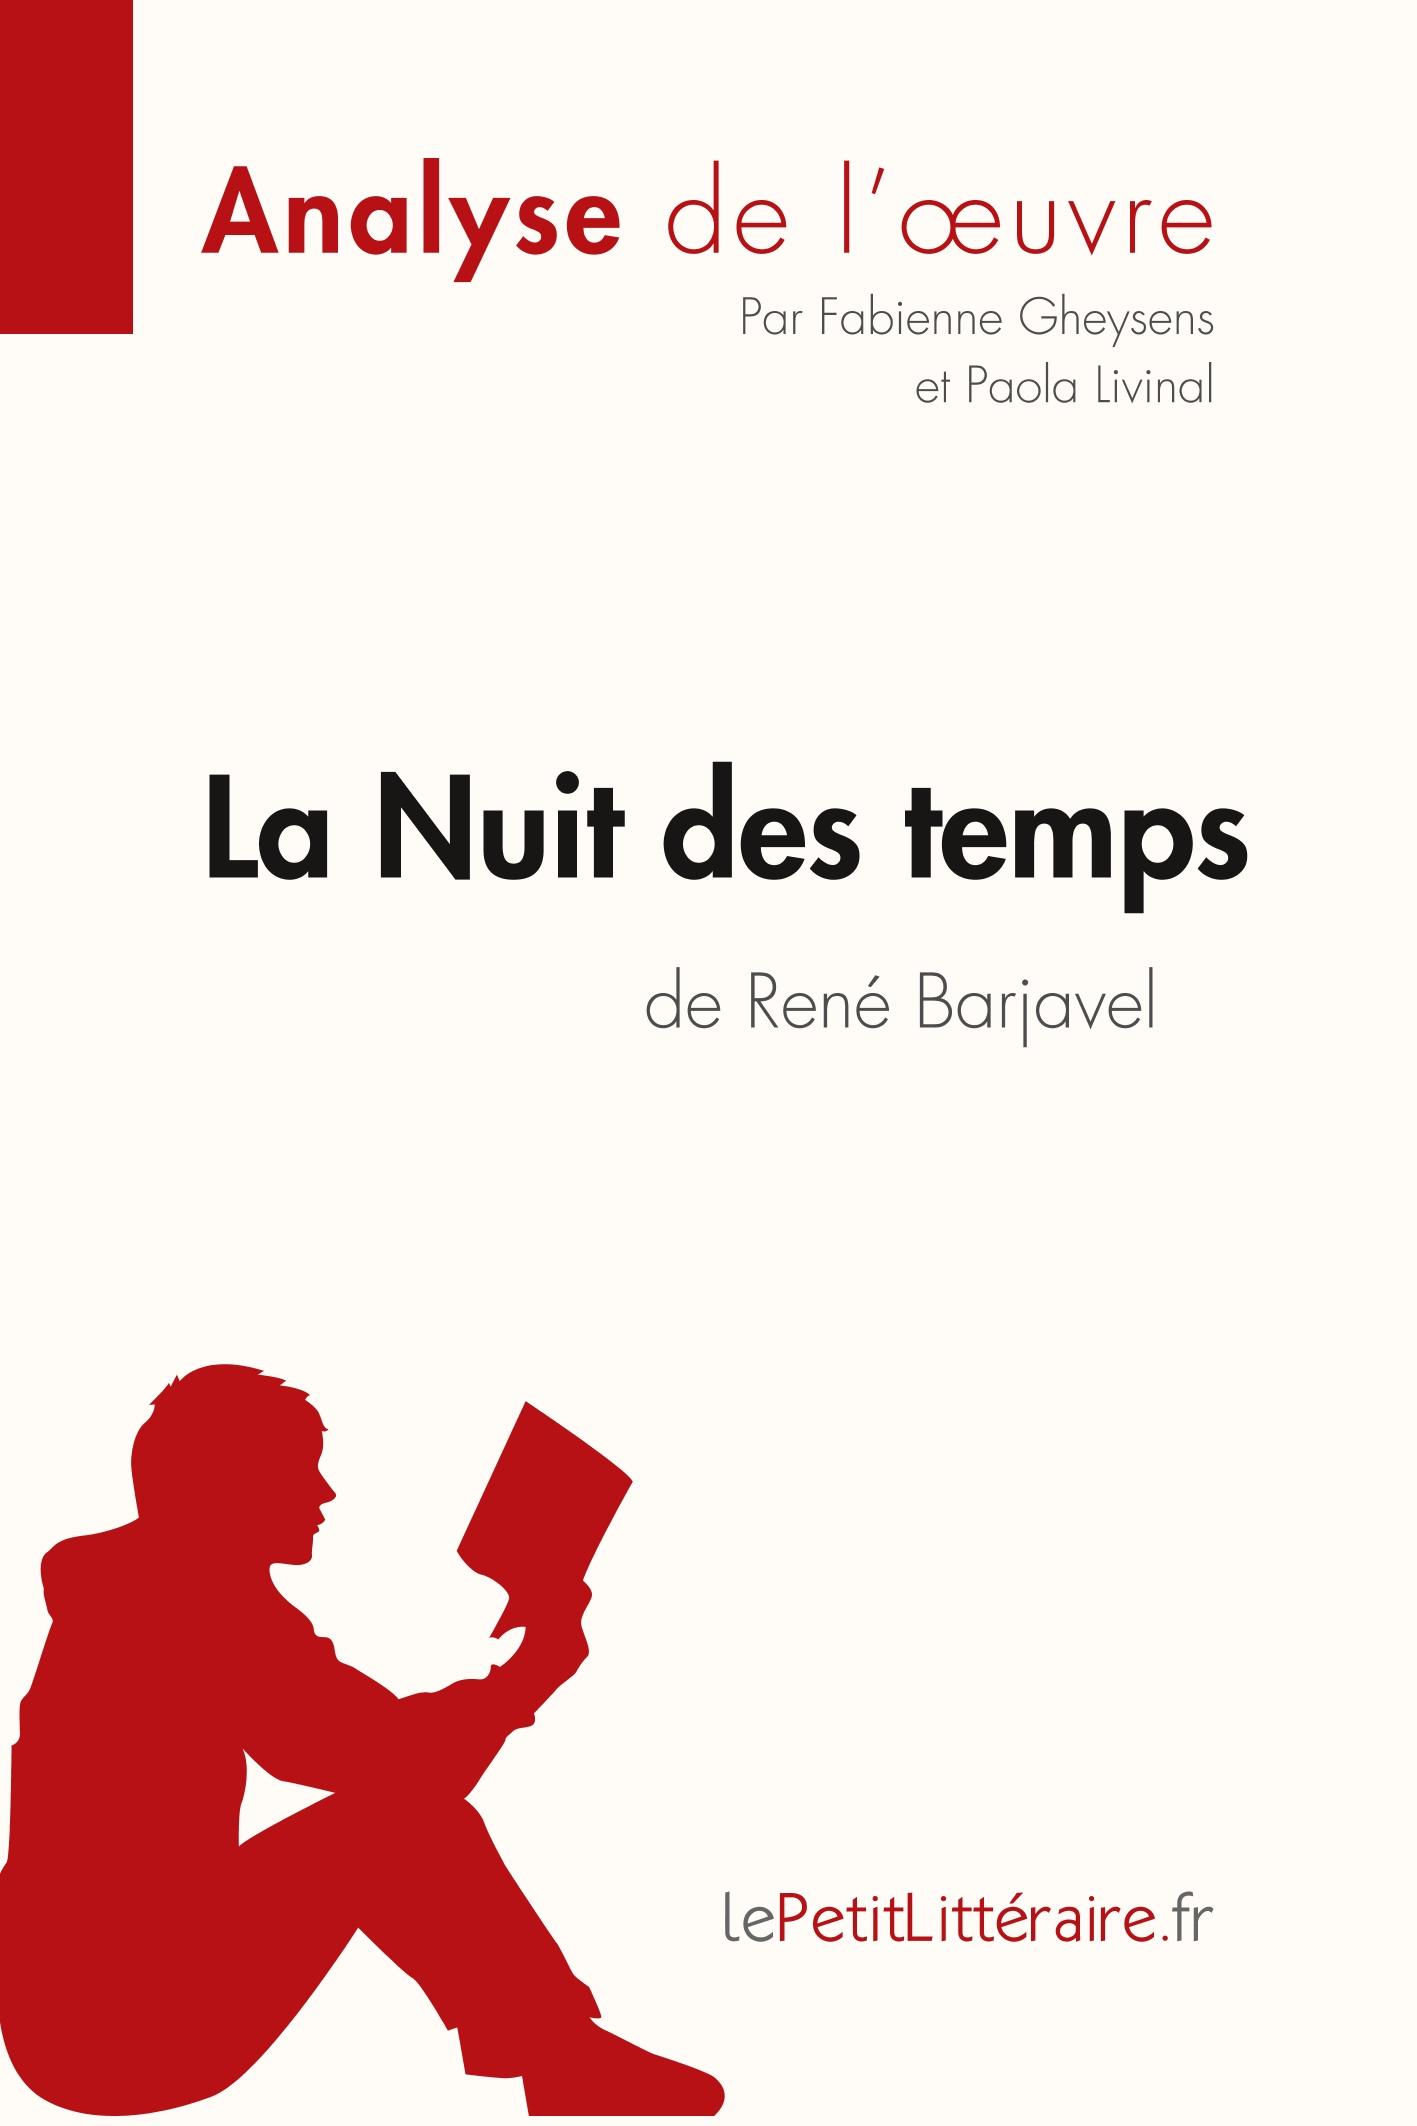 La Nuit des temps de René Barjavel (Analyse de l oeuvre) - Gheysens, Fabienne Livinal, Paola Lepetitlitteraire